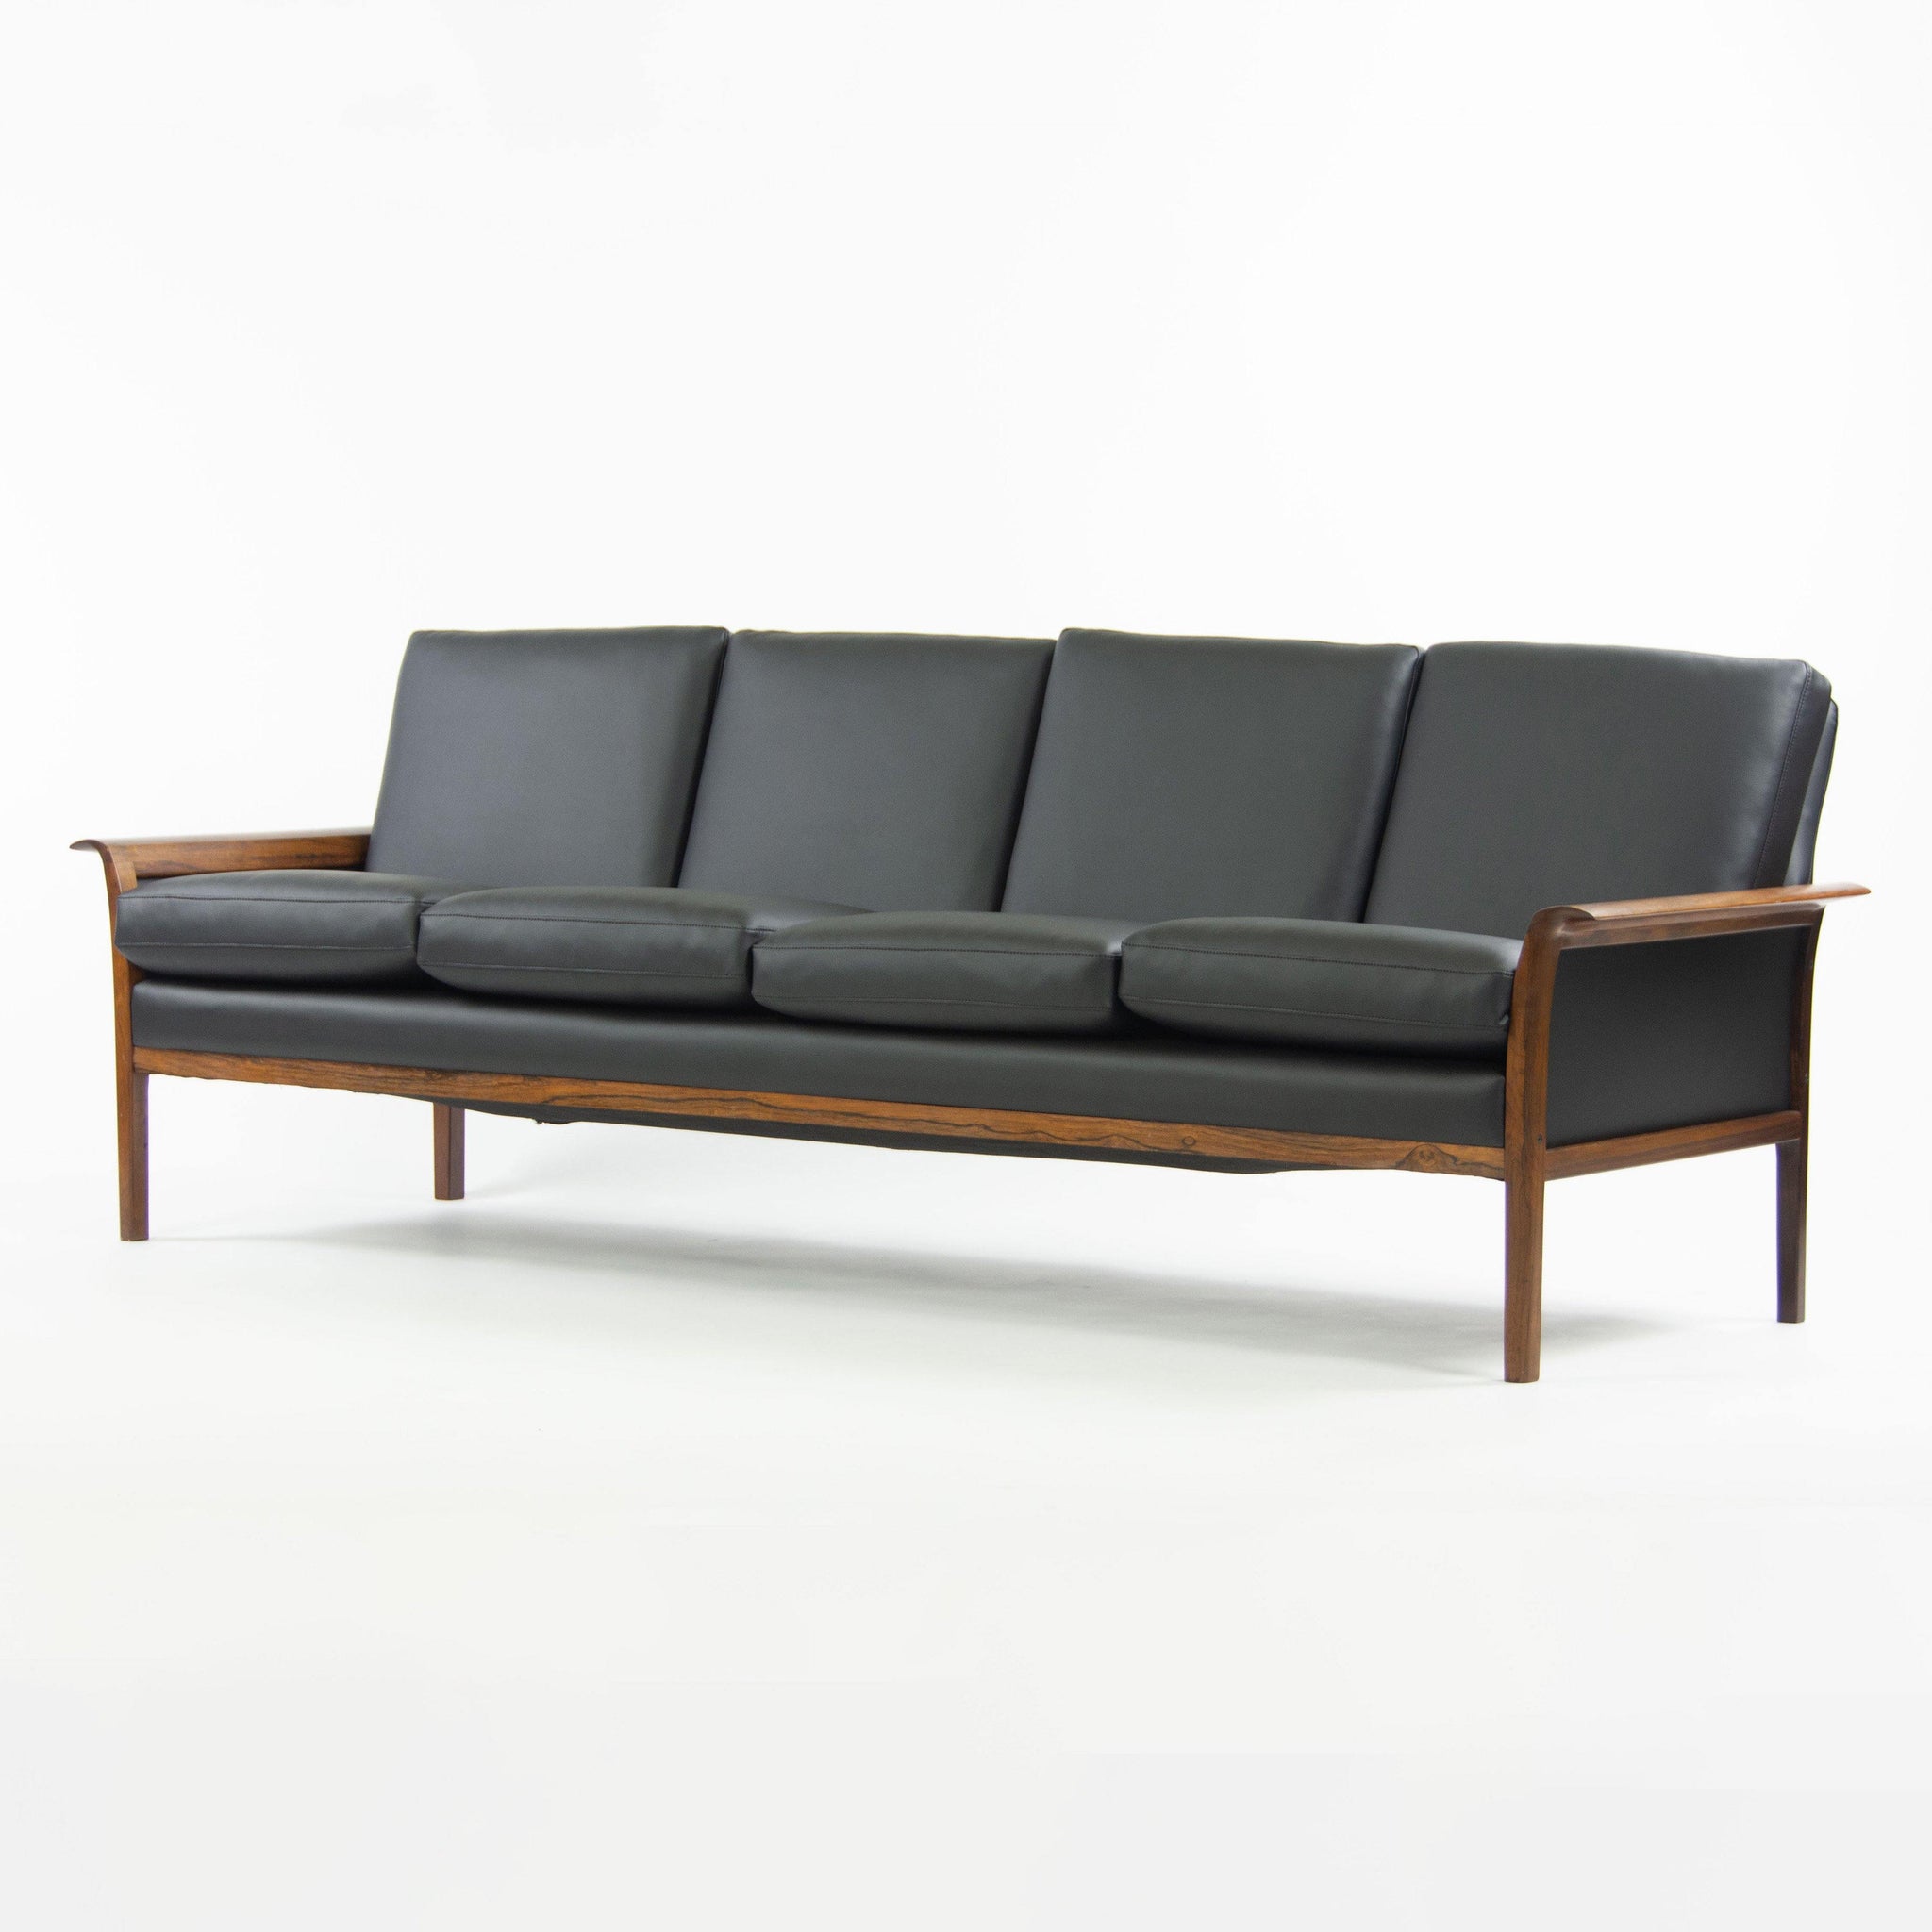 1960's Hans Olsen Rosewood Sofa for Vatne Mobler Norway New Black Upholstery - Rarify Inc.